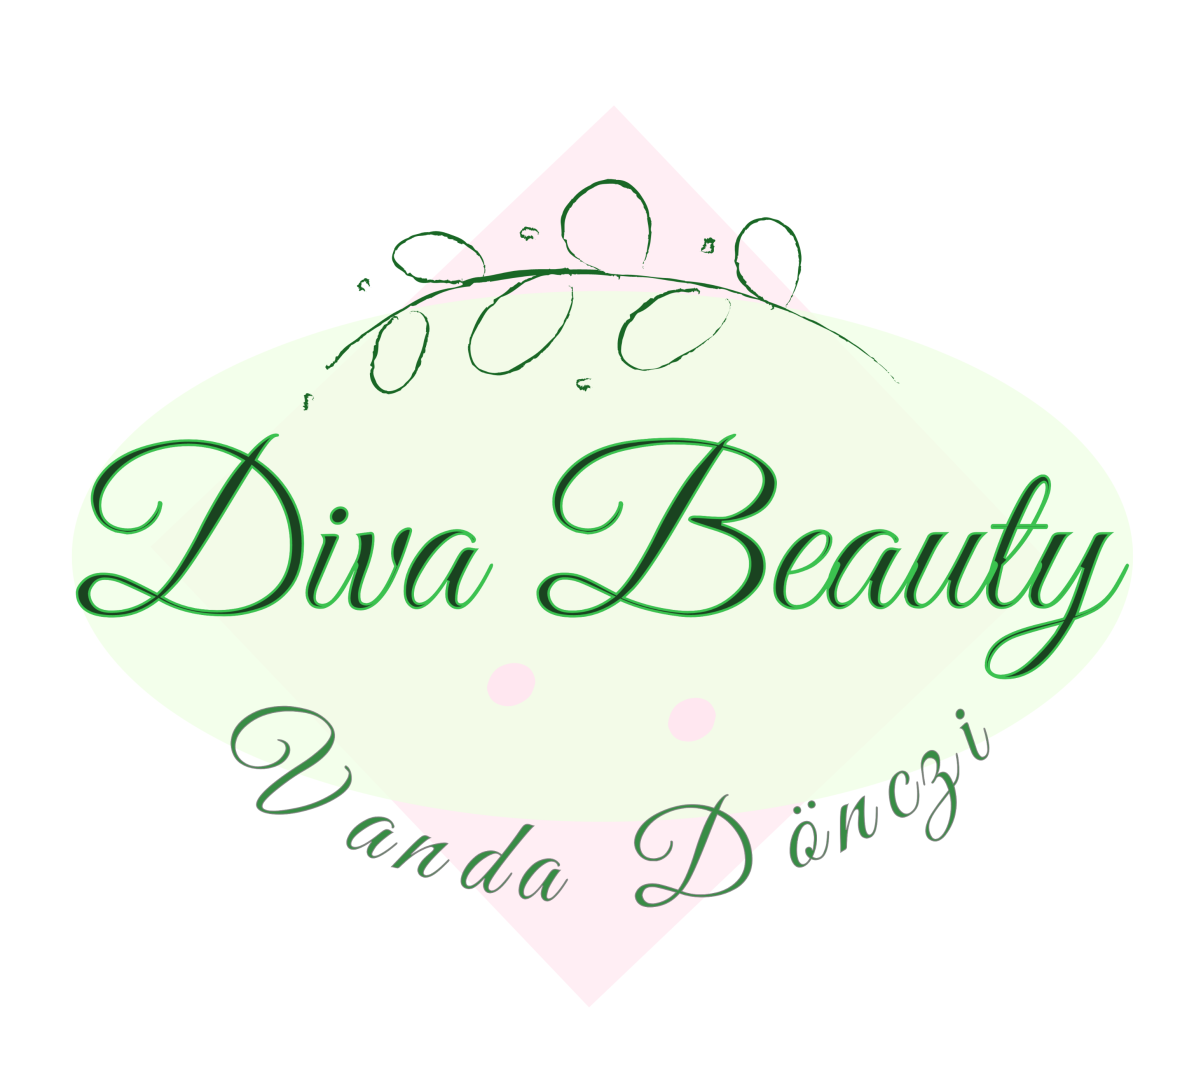 Diva Beauty 